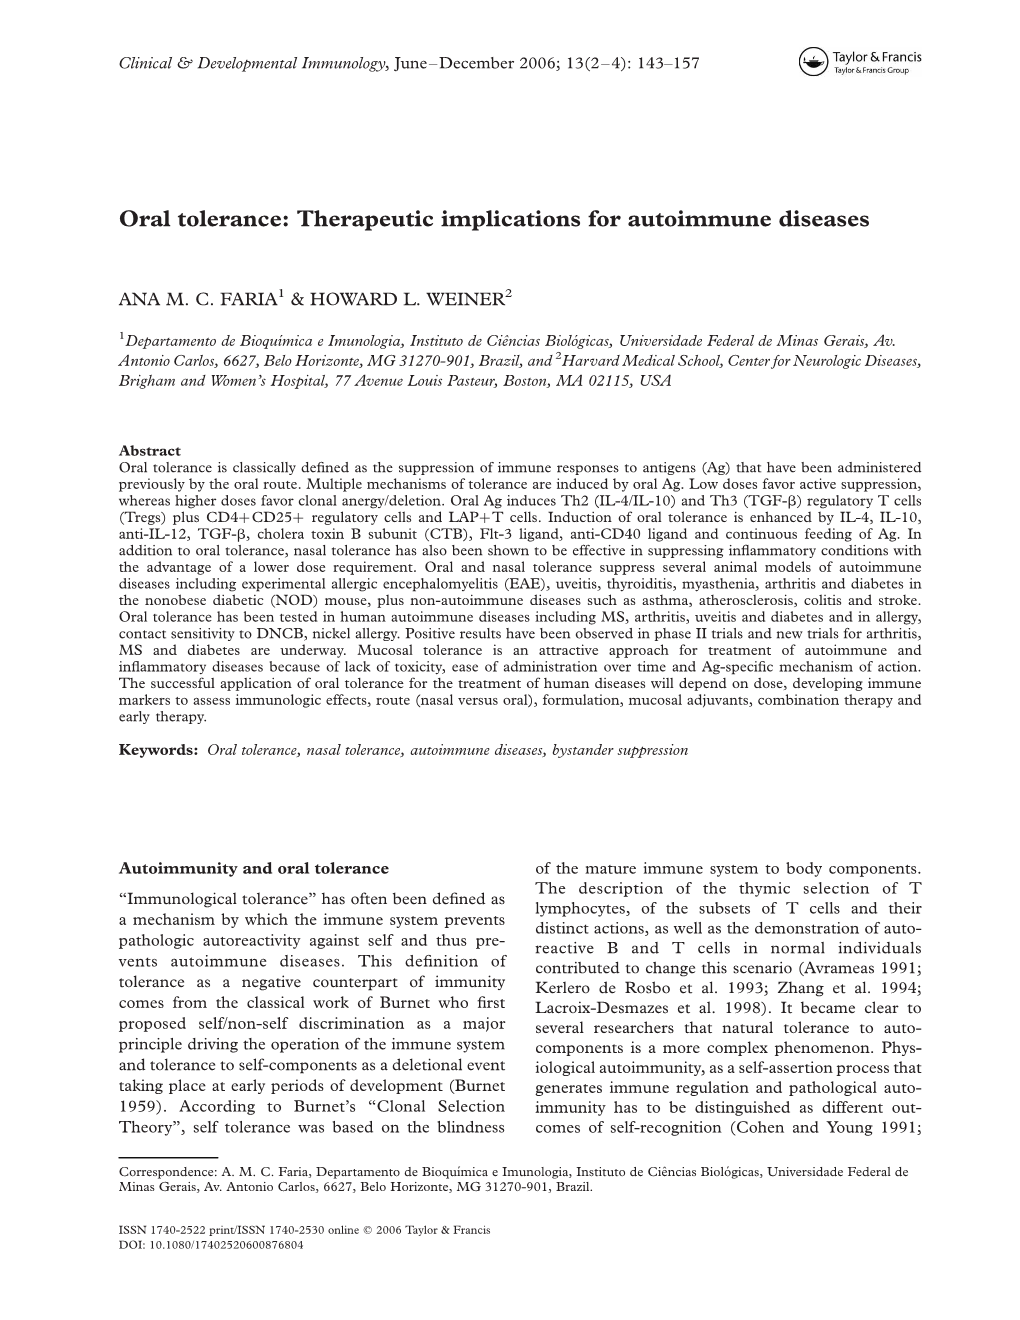 Oral Tolerance: Therapeutic Implications for Autoimmune Diseases